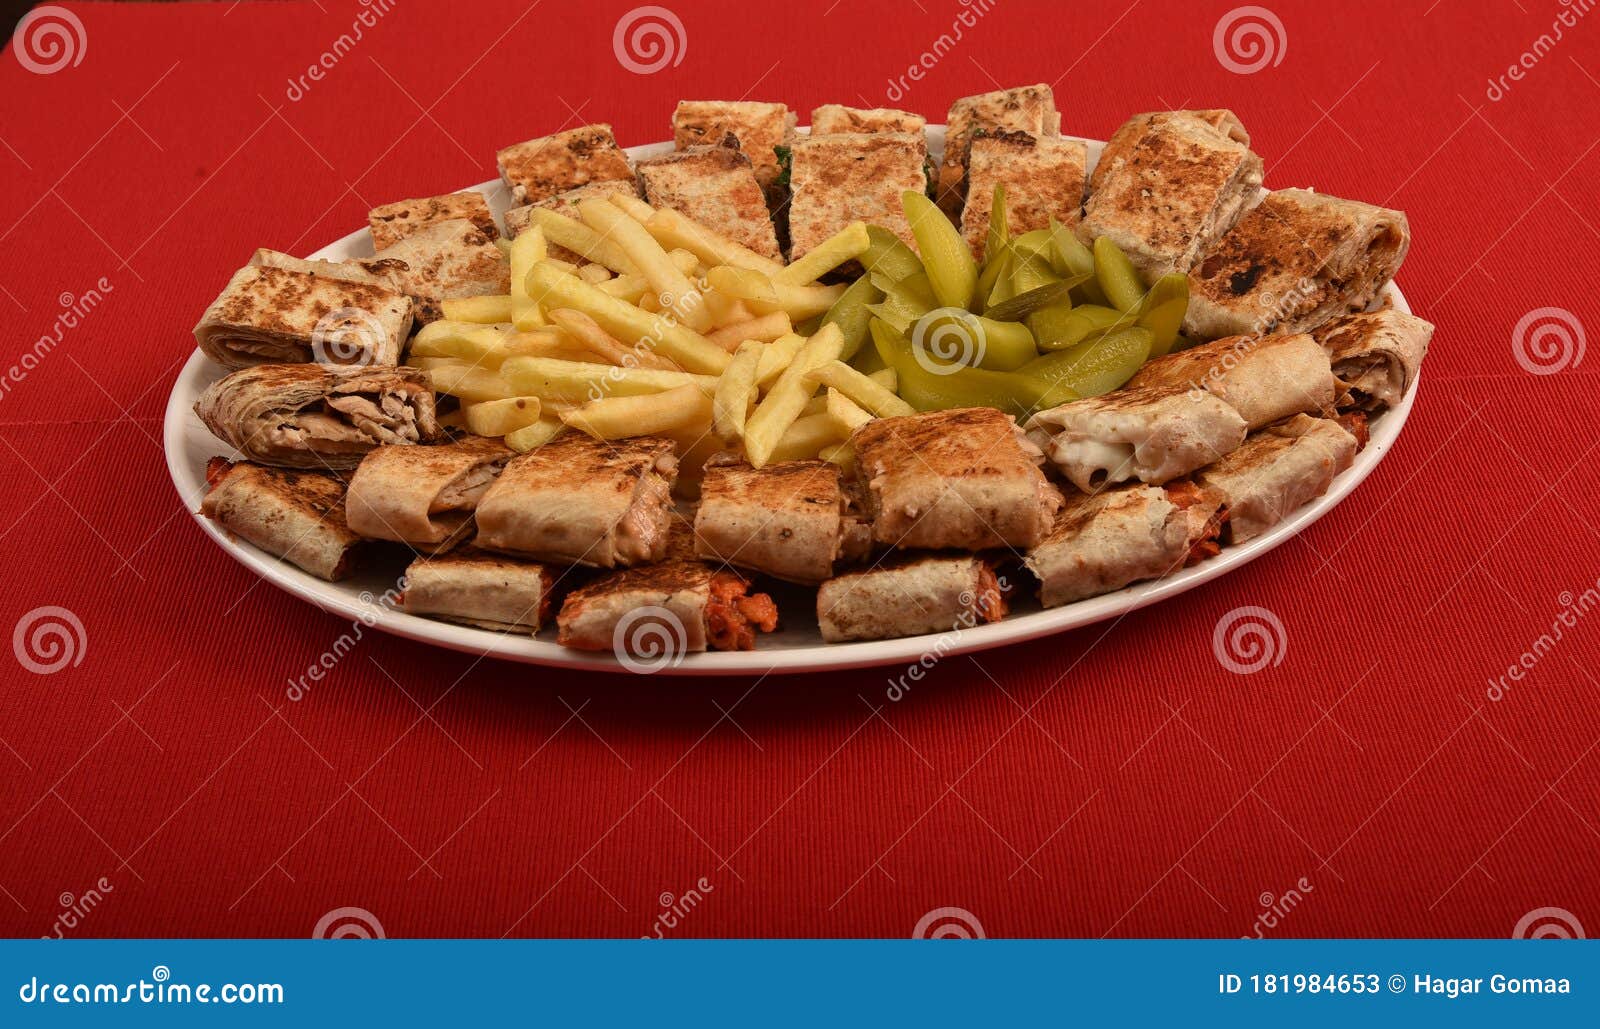 Arabic Shawarma Sandwich, Mixed Shawarma Plate, Syrian Chicken Shawarma ...